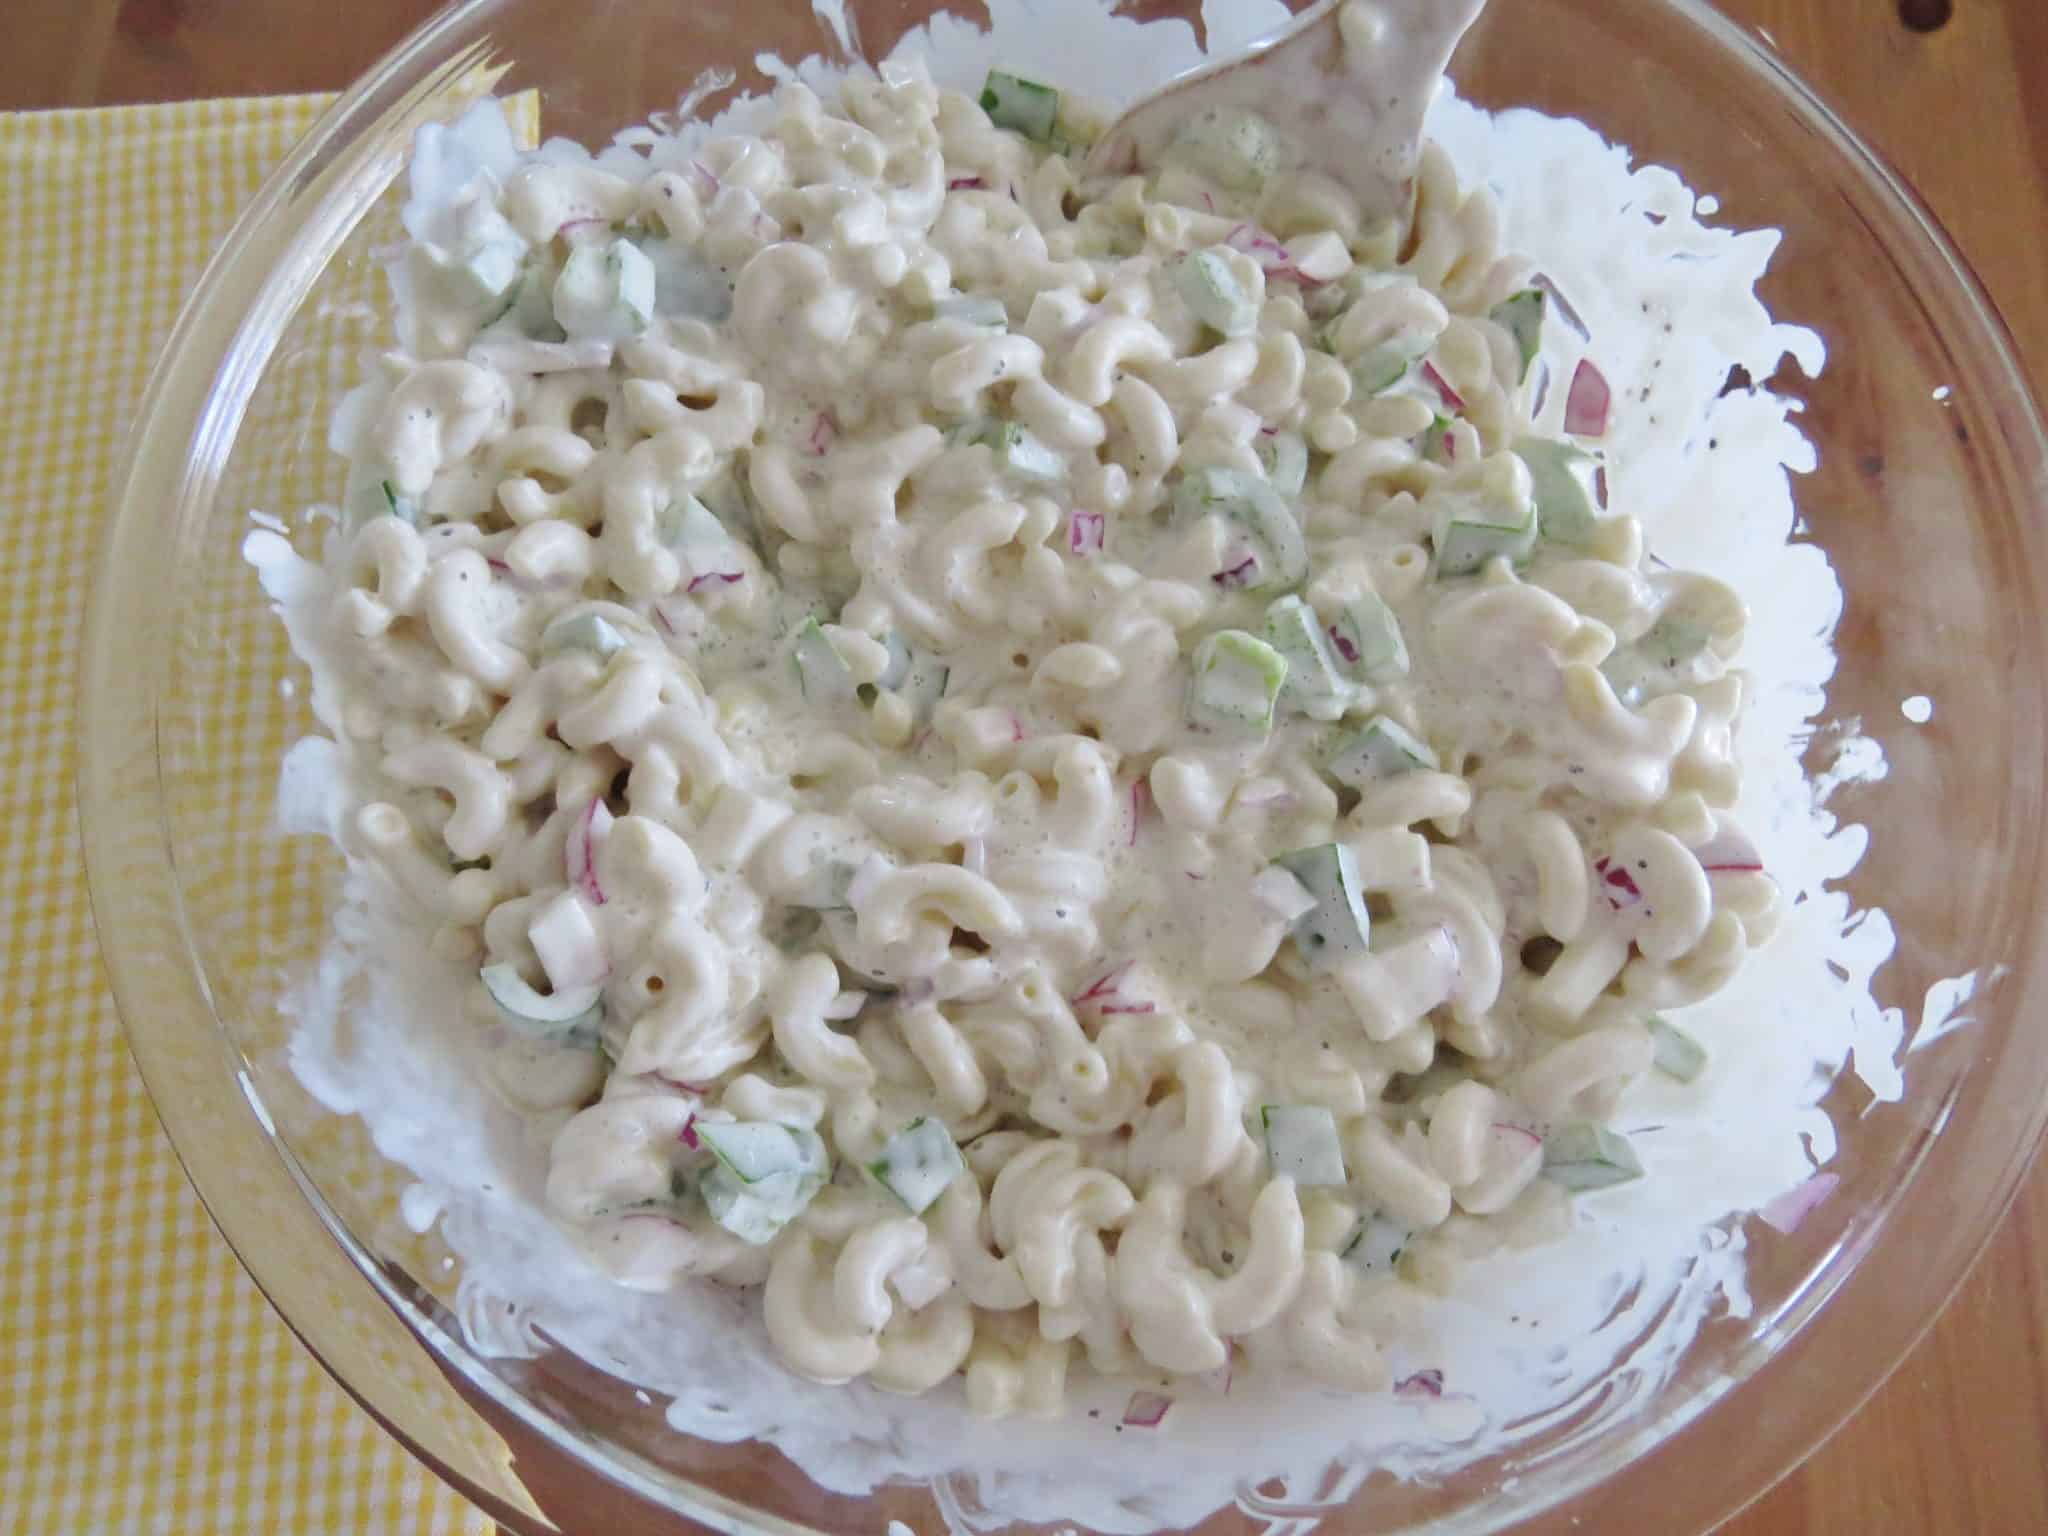 creamy macaroni salad in a bowl.